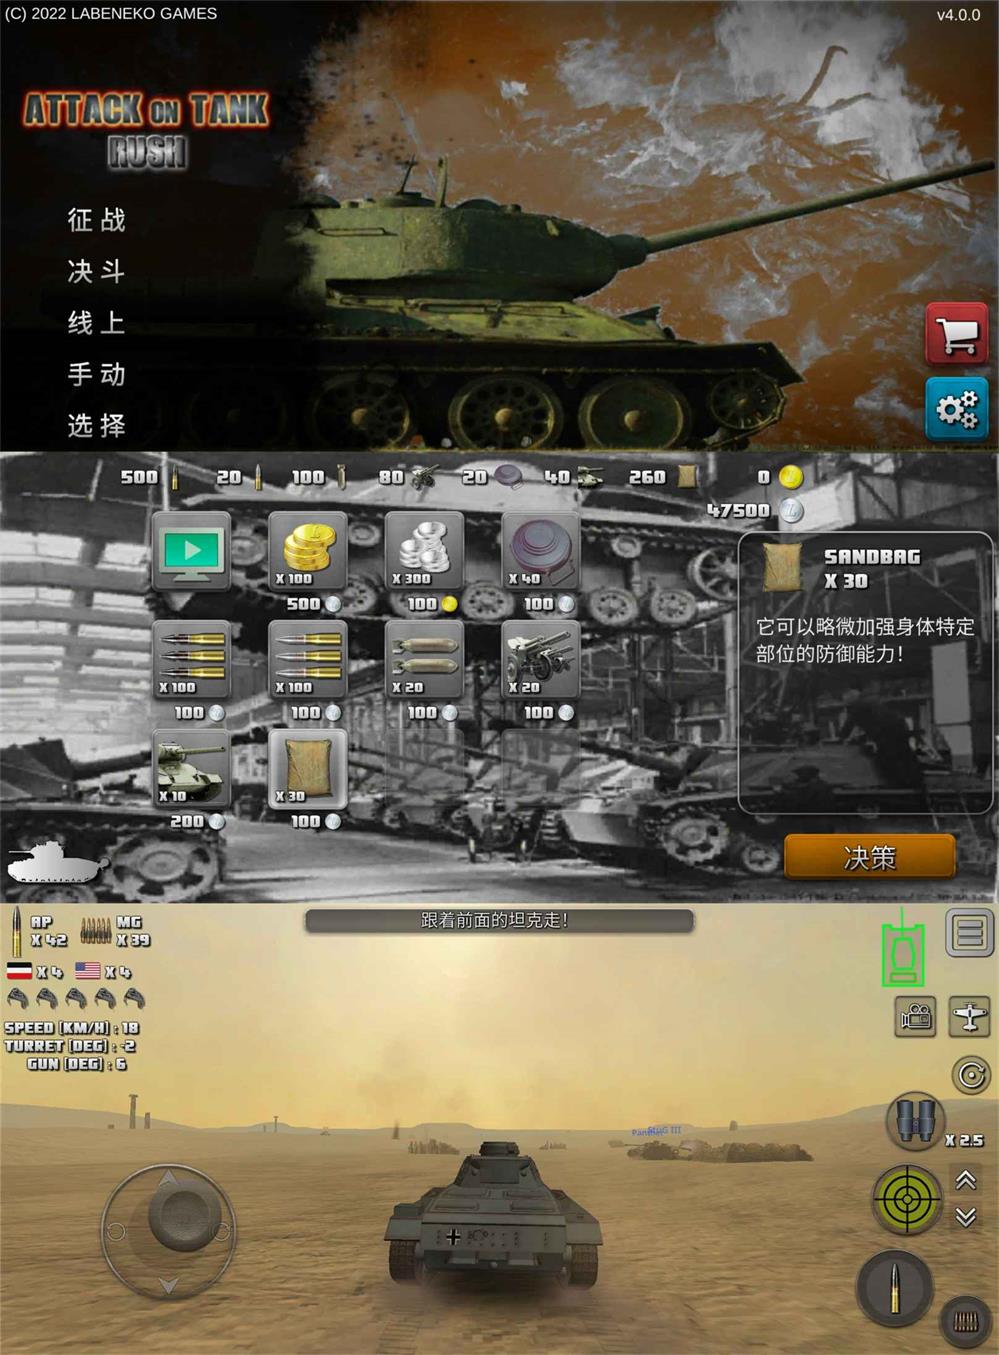 坦克模拟射击游戏 突击坦克 图片